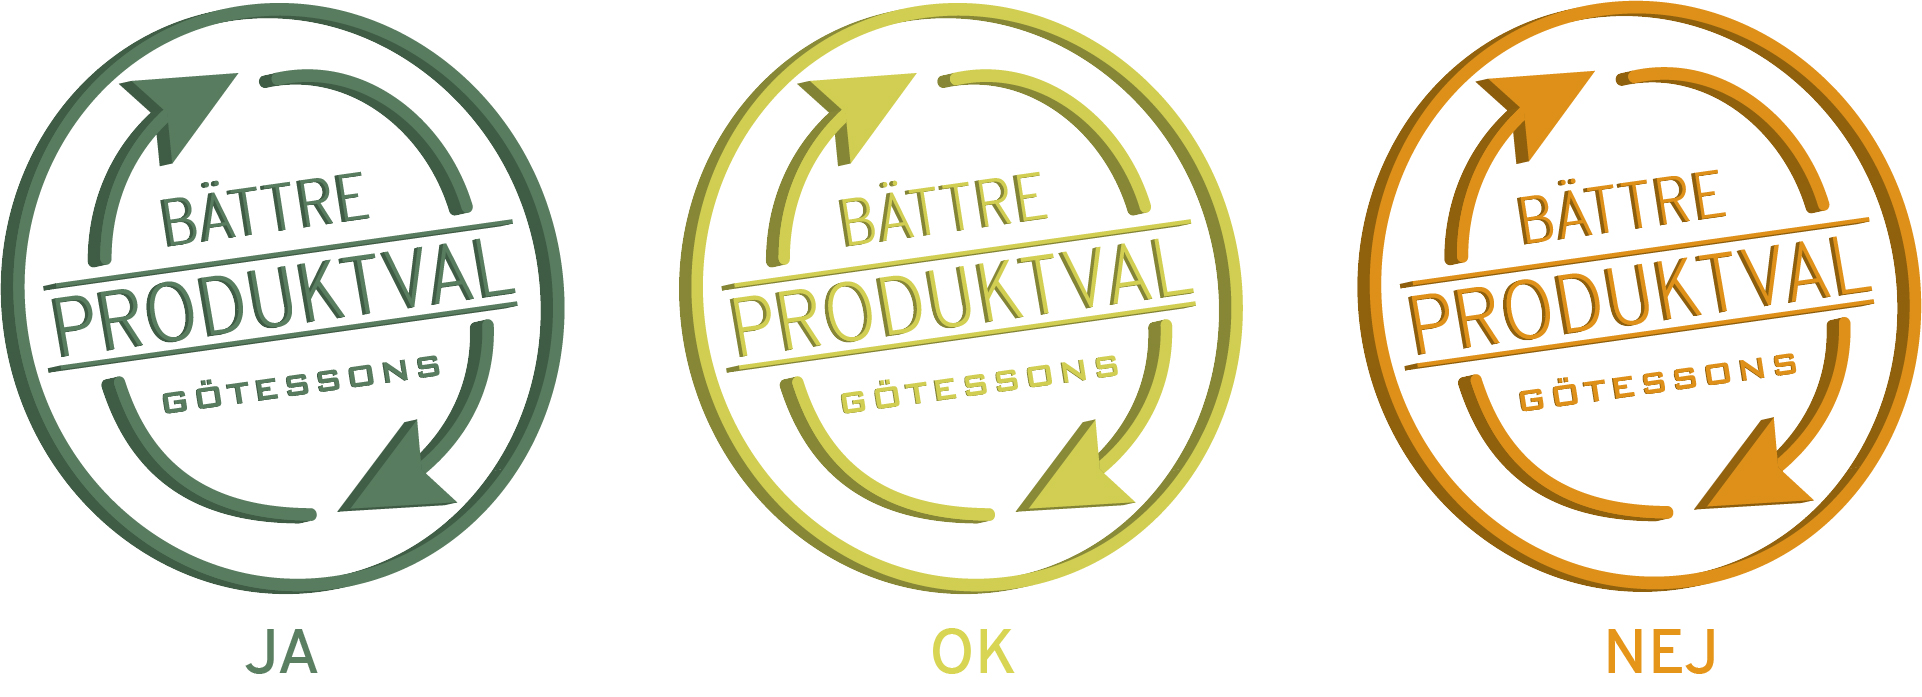 Battre_Produktval_8.jpg